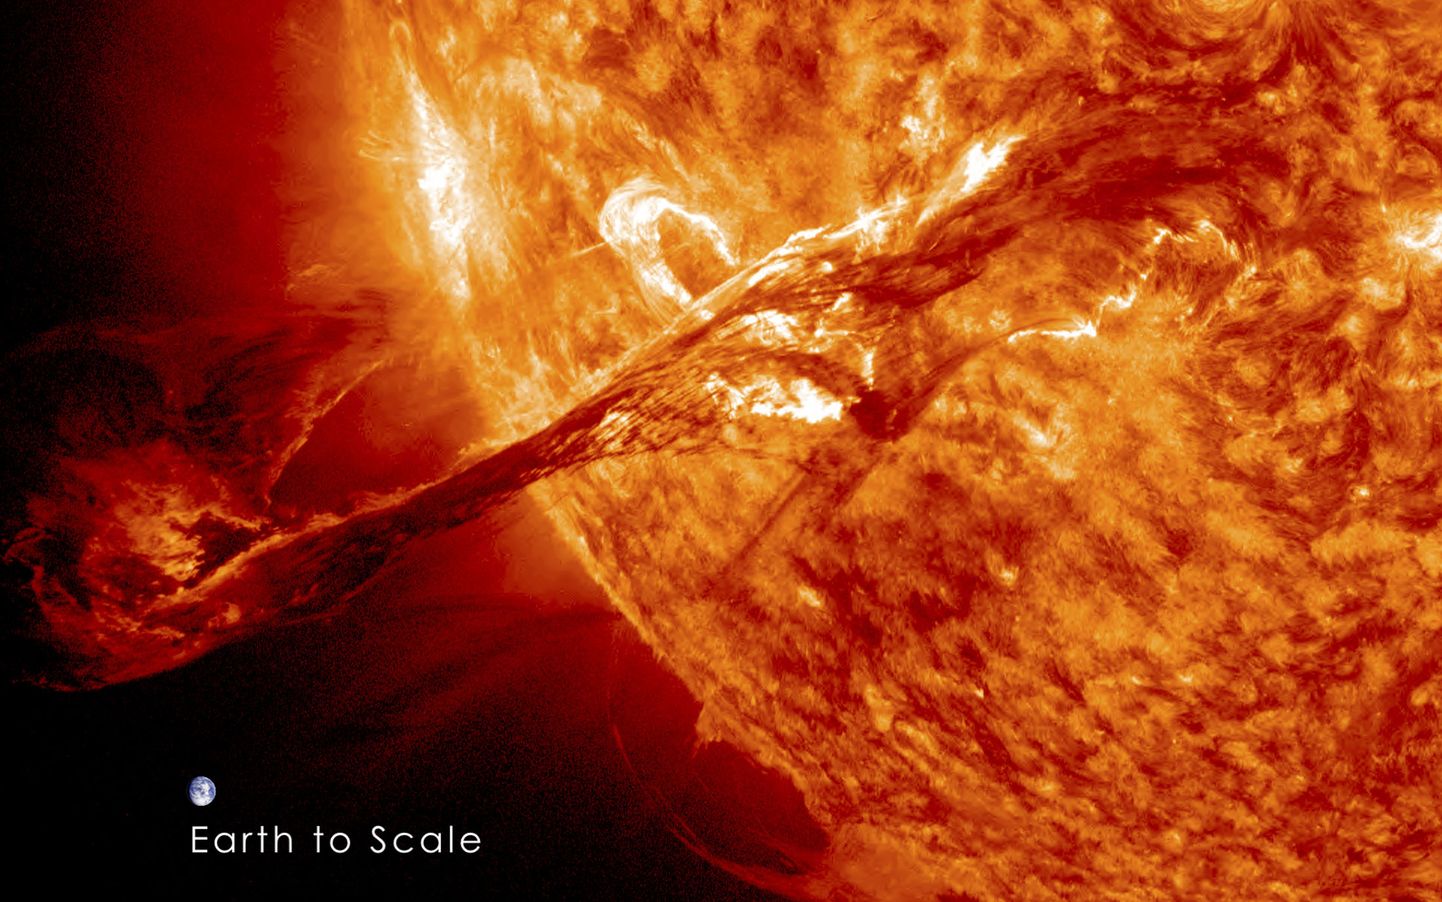 Foto Päikesest, mis on tehtud 31. augustil 2012 ja millel on näha krooniaine massilist väljavoolu